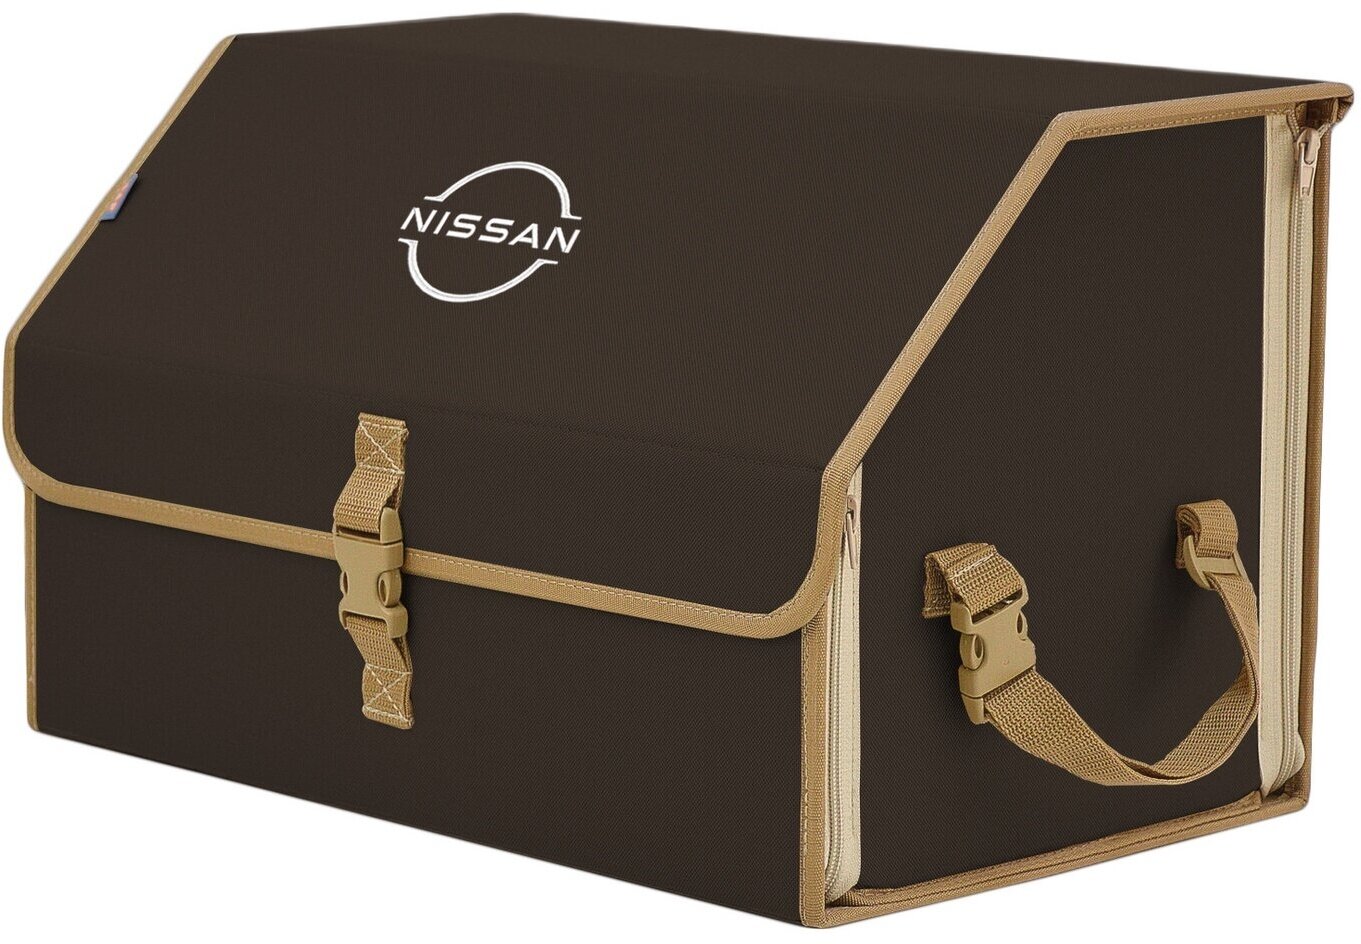 Органайзер-саквояж в багажник "Союз" (размер L). Цвет: коричневый с бежевой окантовкой и вышивкой Nissan (Ниссан).